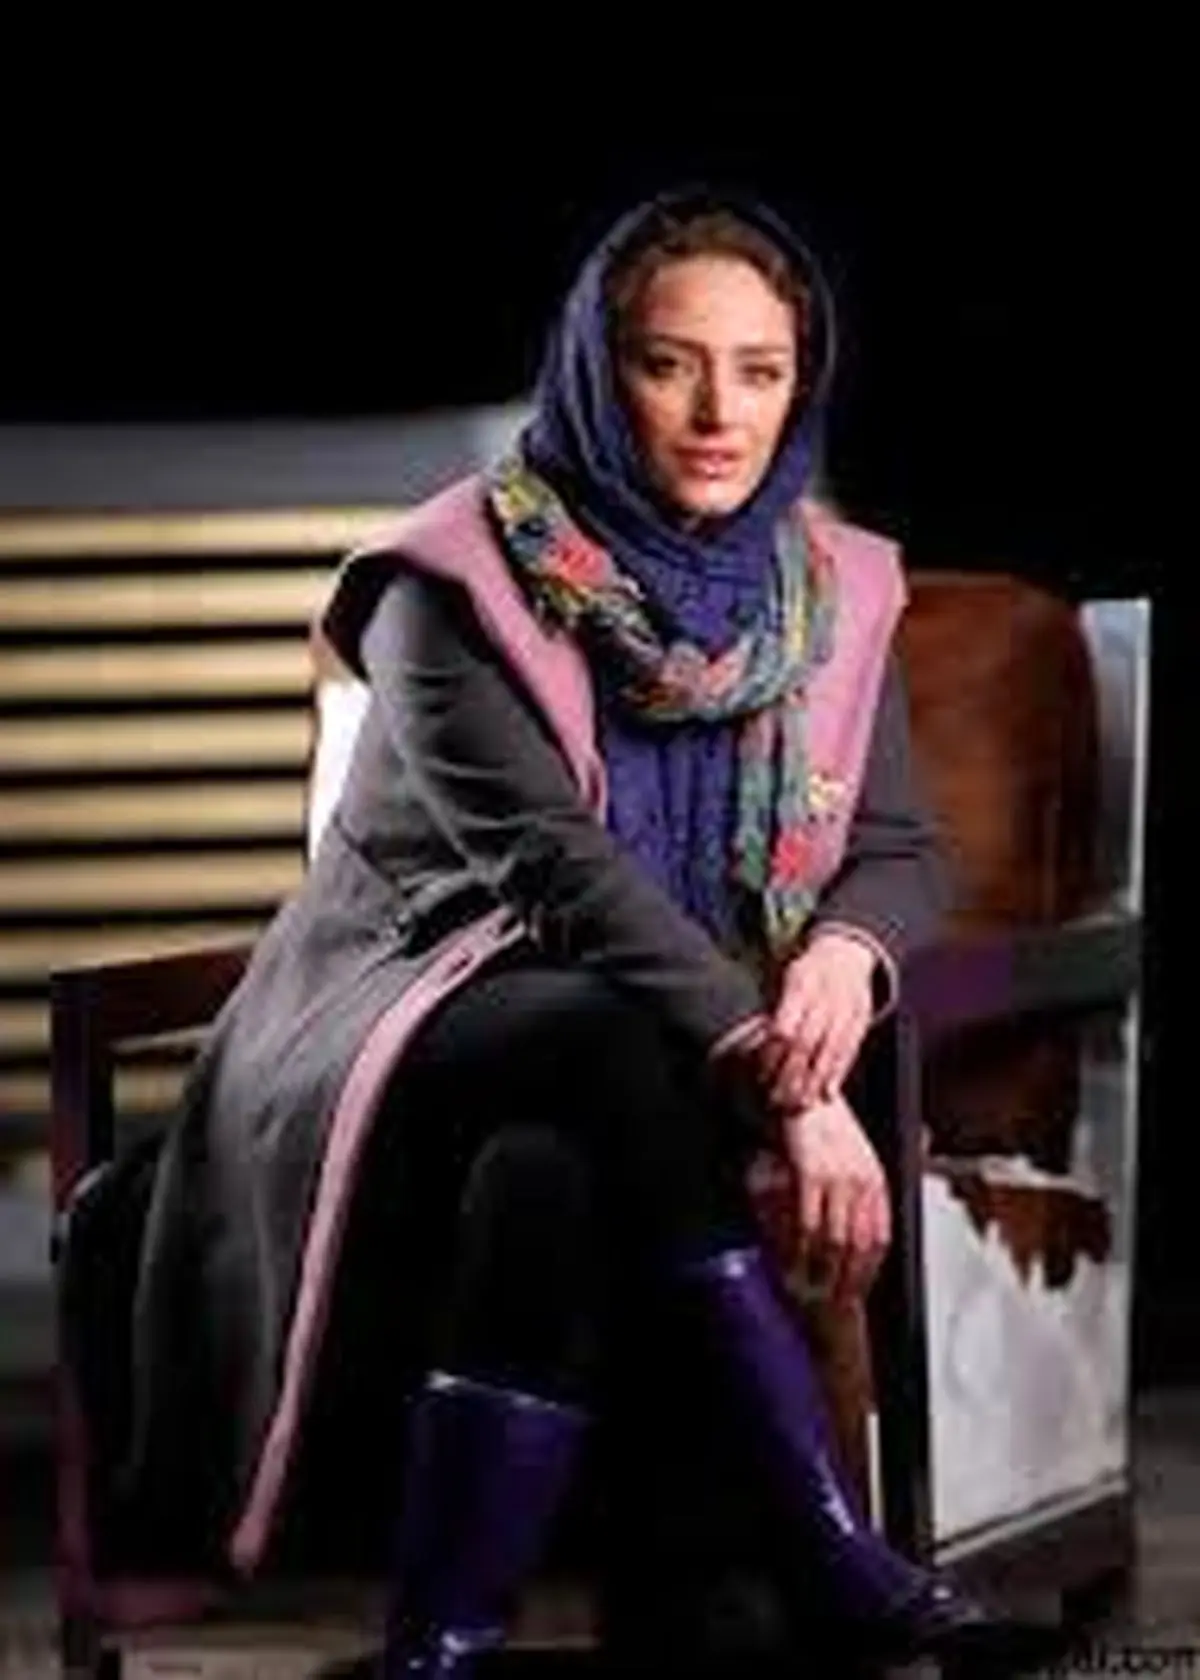  بازیگر زن سینمای ایران ازدواج کرد